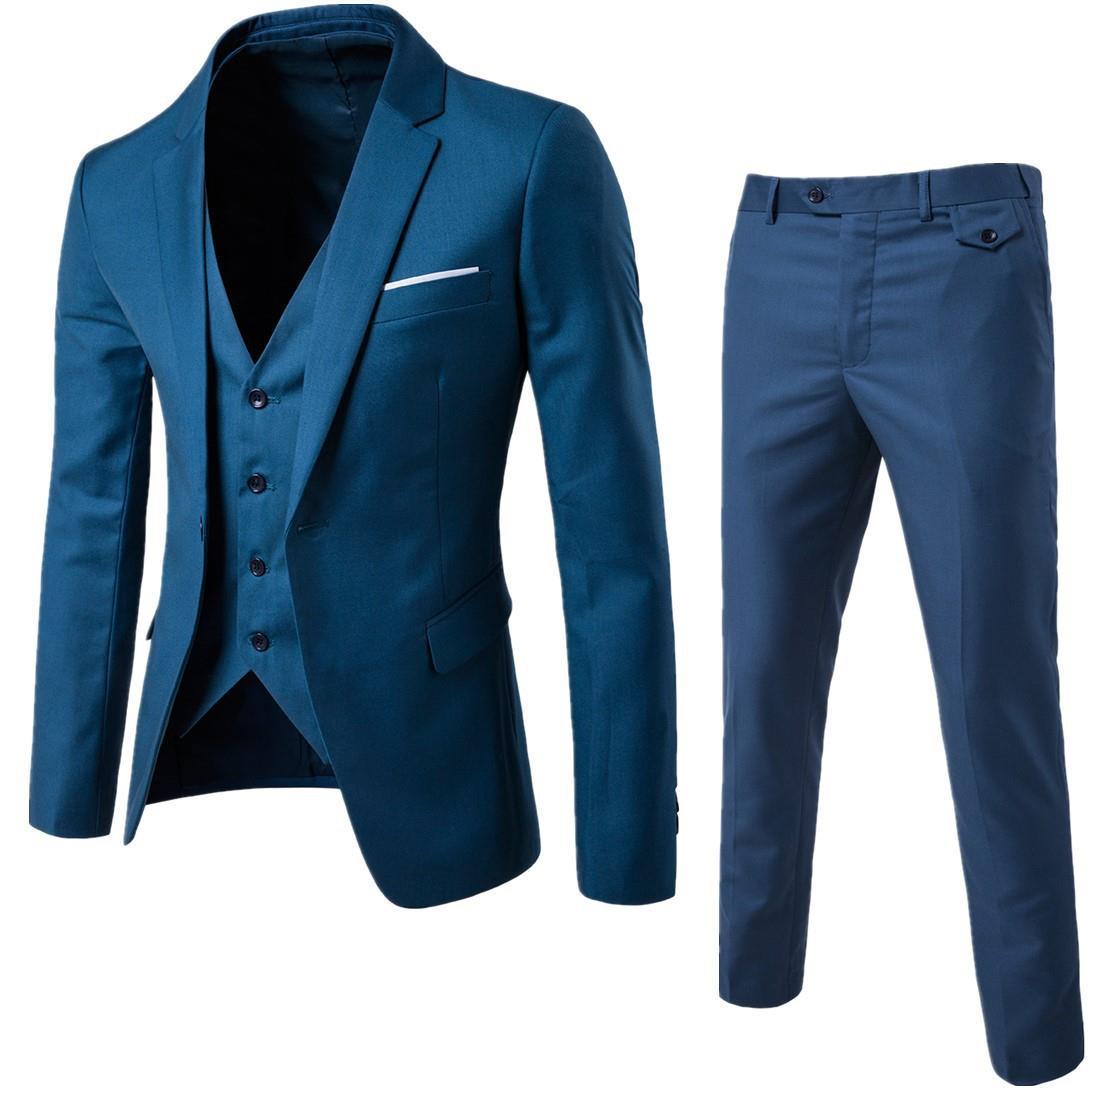 Men's Business Casual Suit Three-piece Suit 